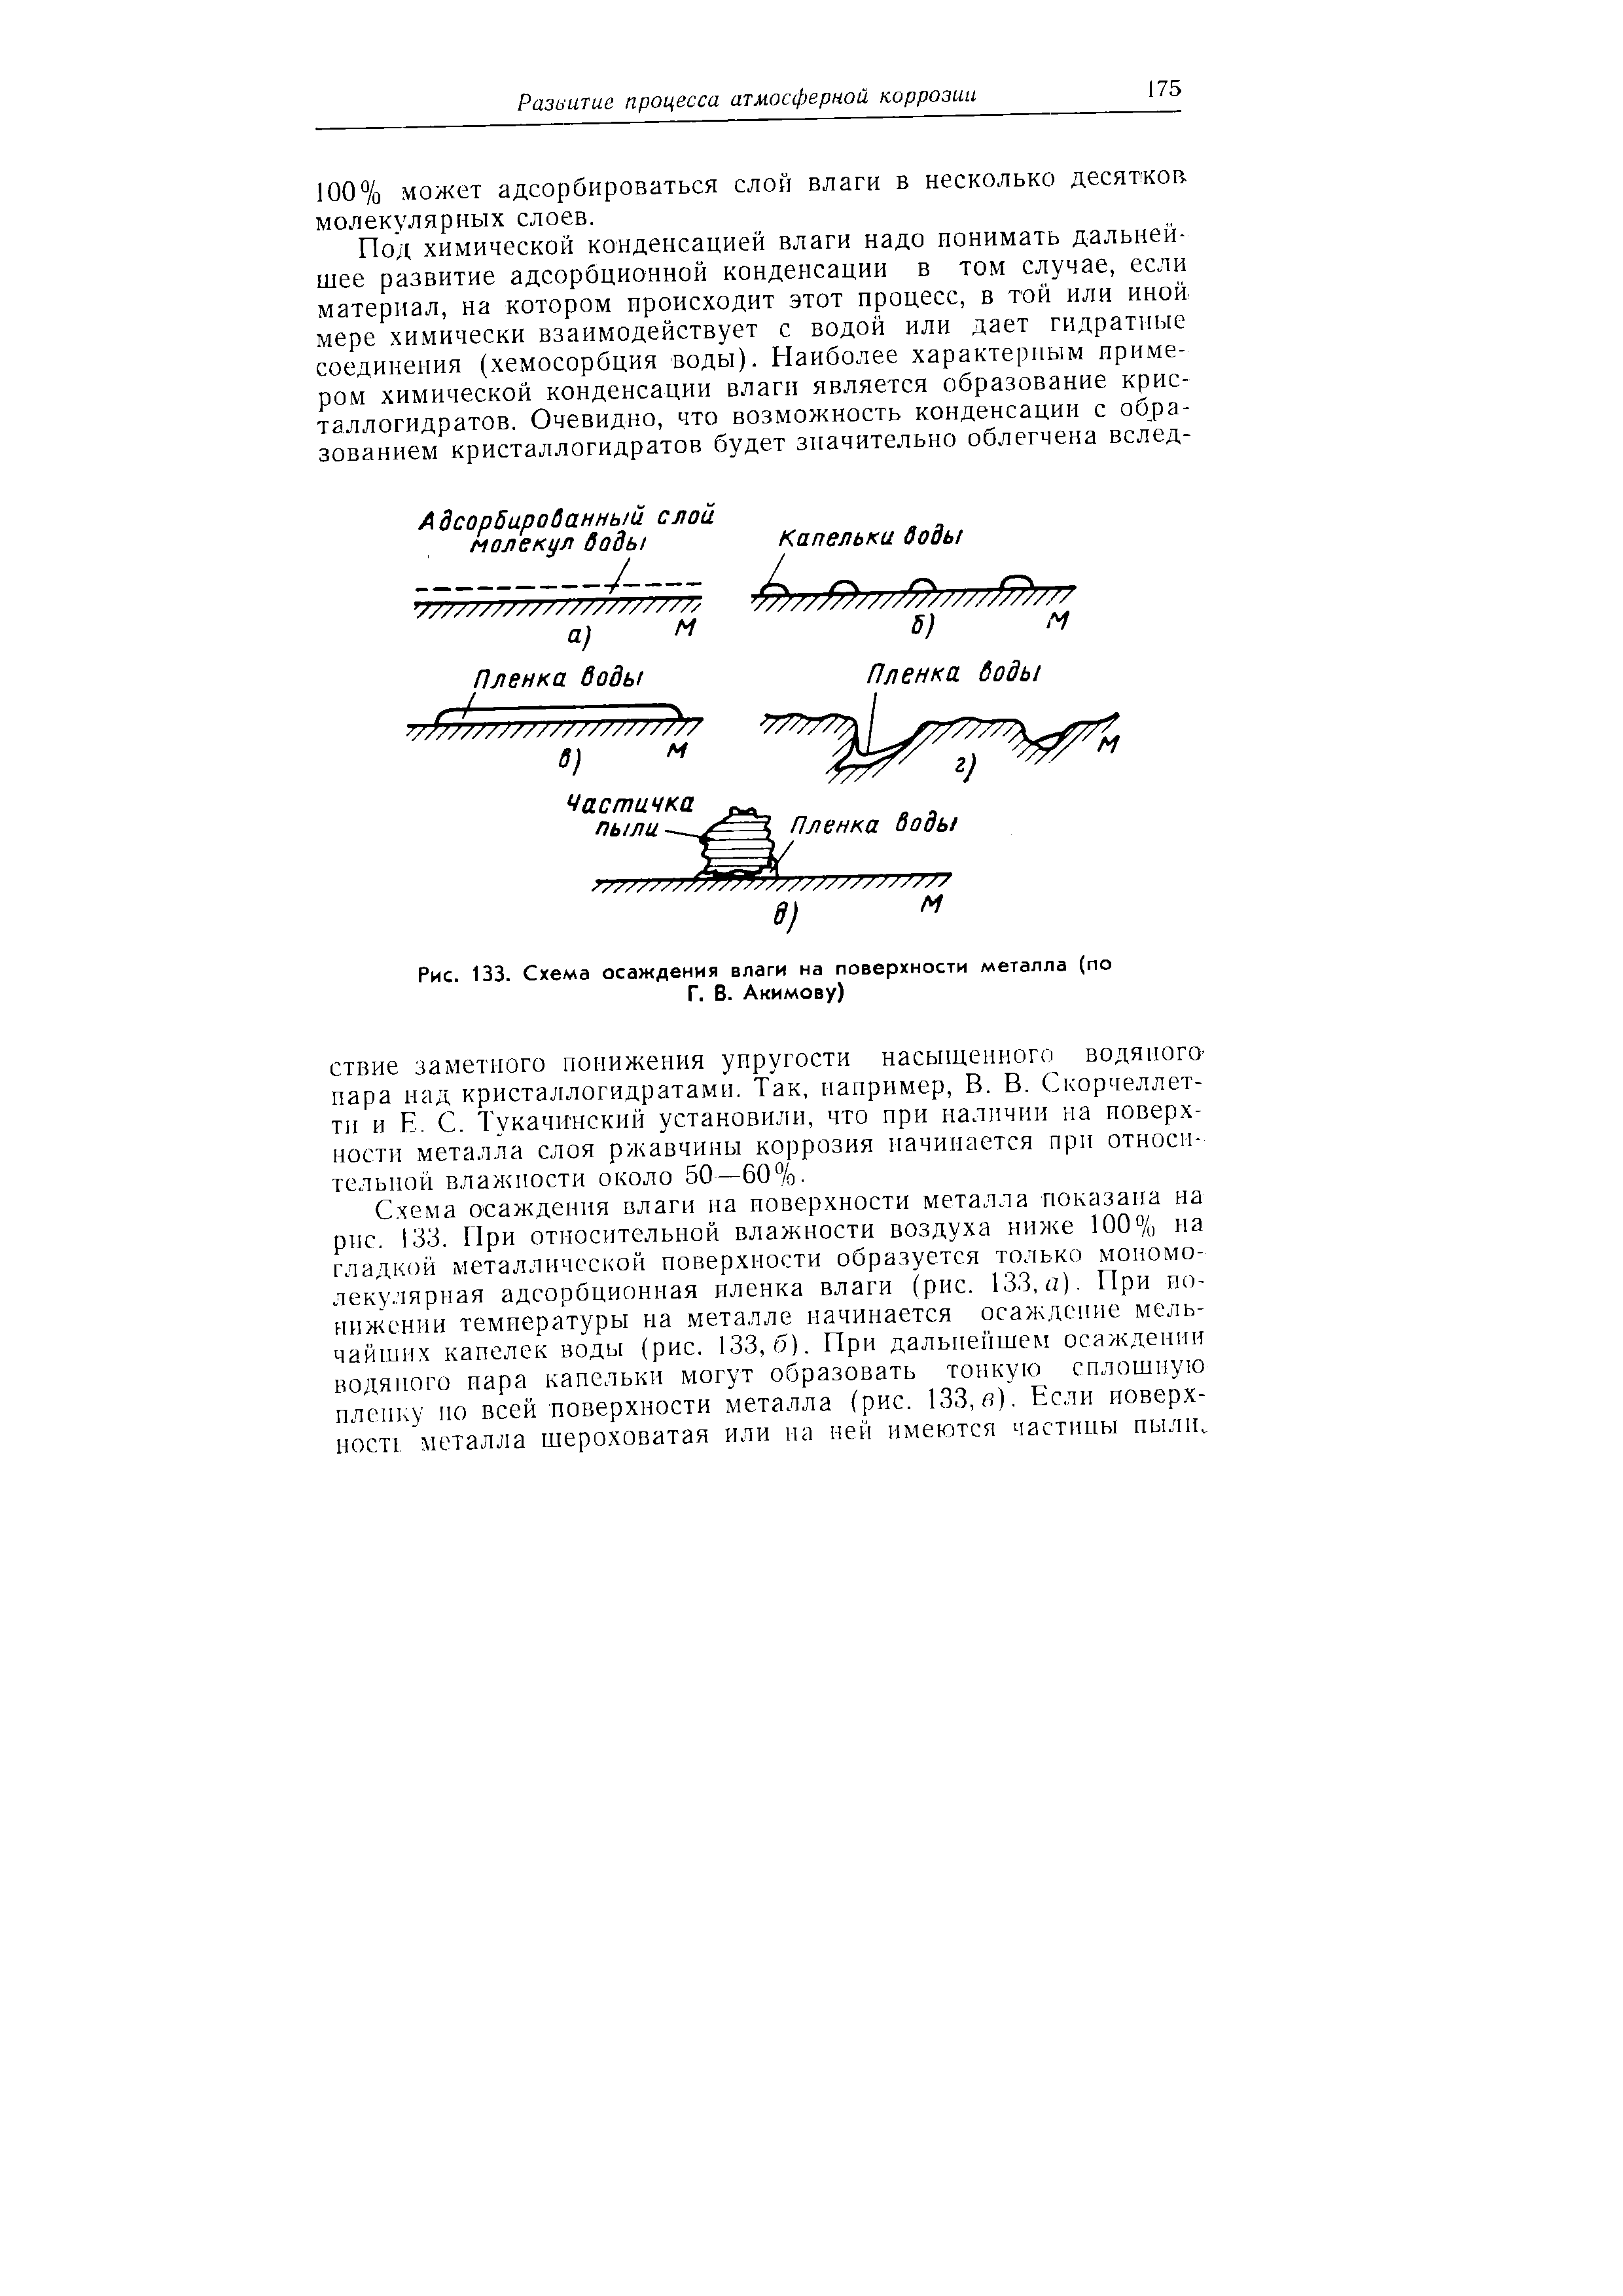 Рис. 133. Схема осаждения влаги на <a href="/info/194926">поверхности металла</a> (по Г. В. Акимову)
